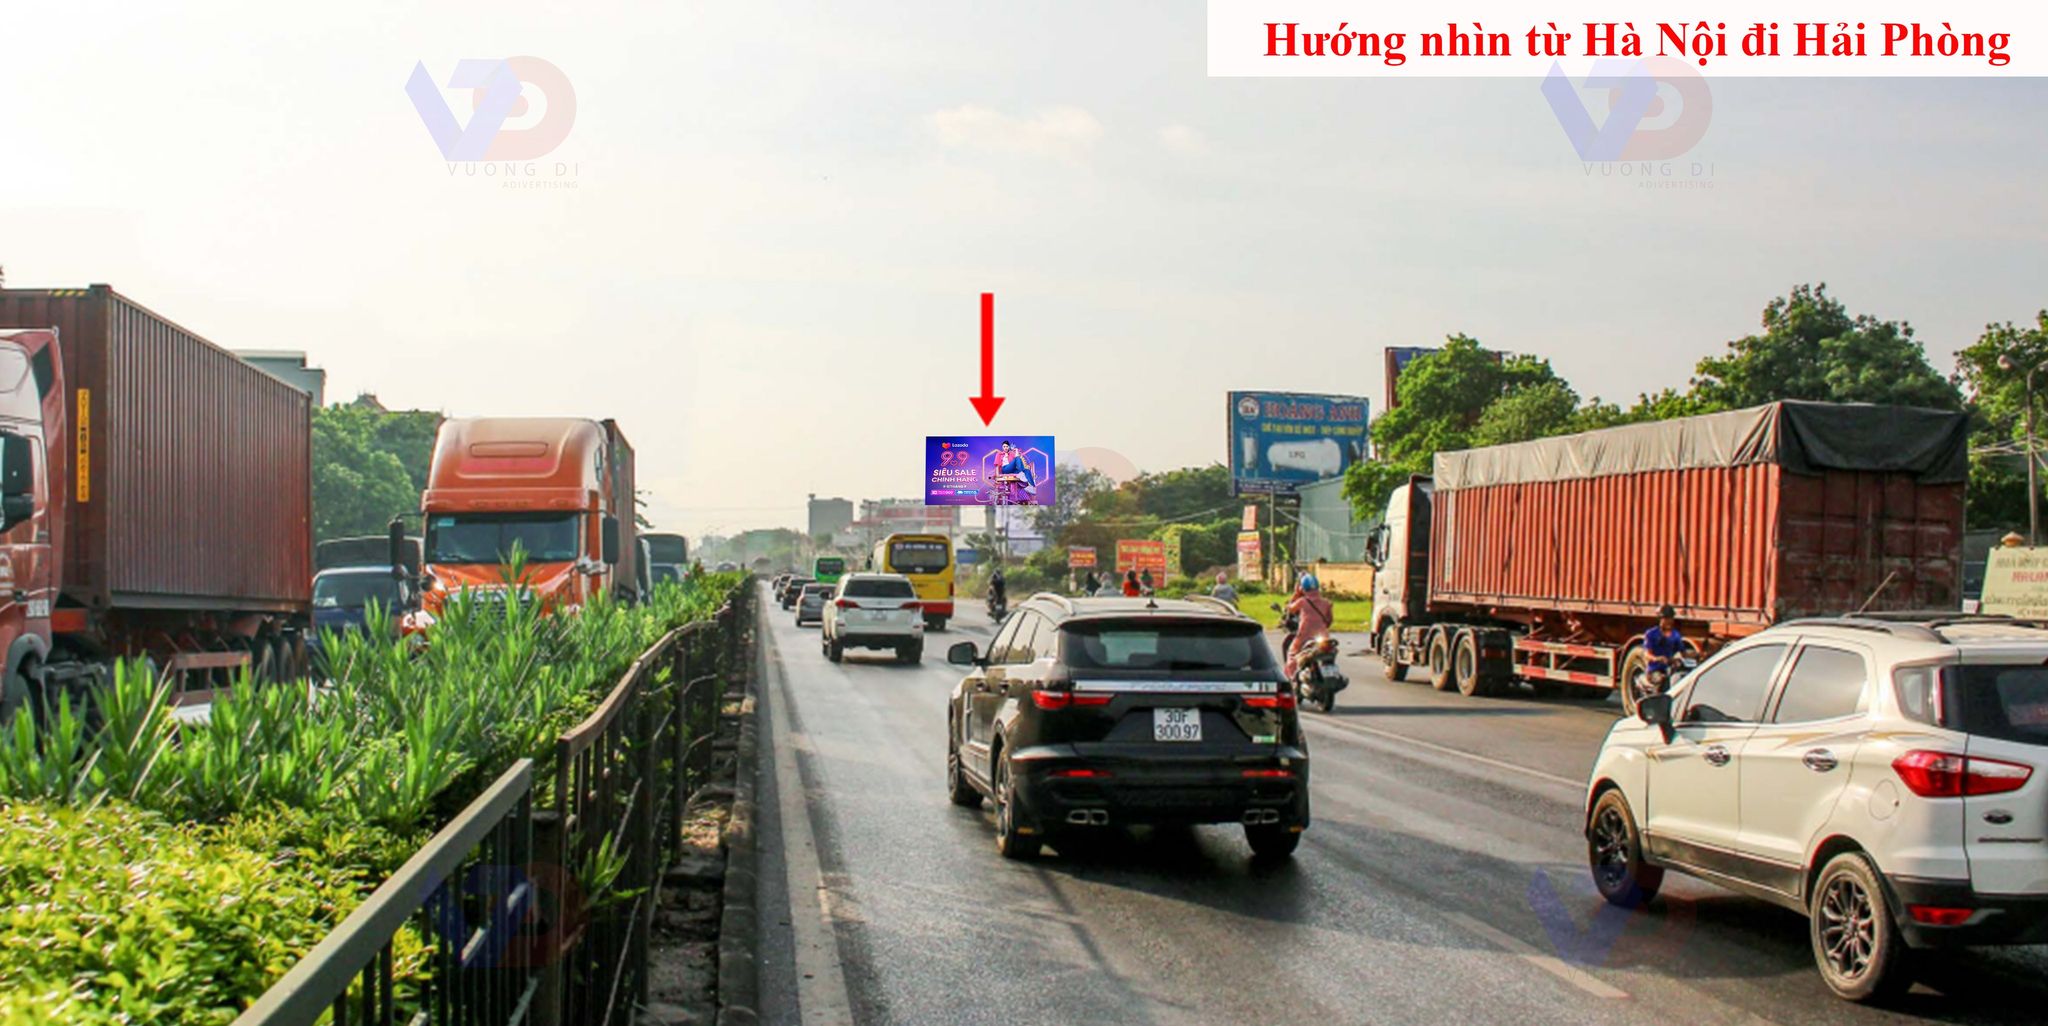 Bảng quảng cáo gần cầu vượt Phố Nối, Thị xã Mỹ Hào, Hưng Yên